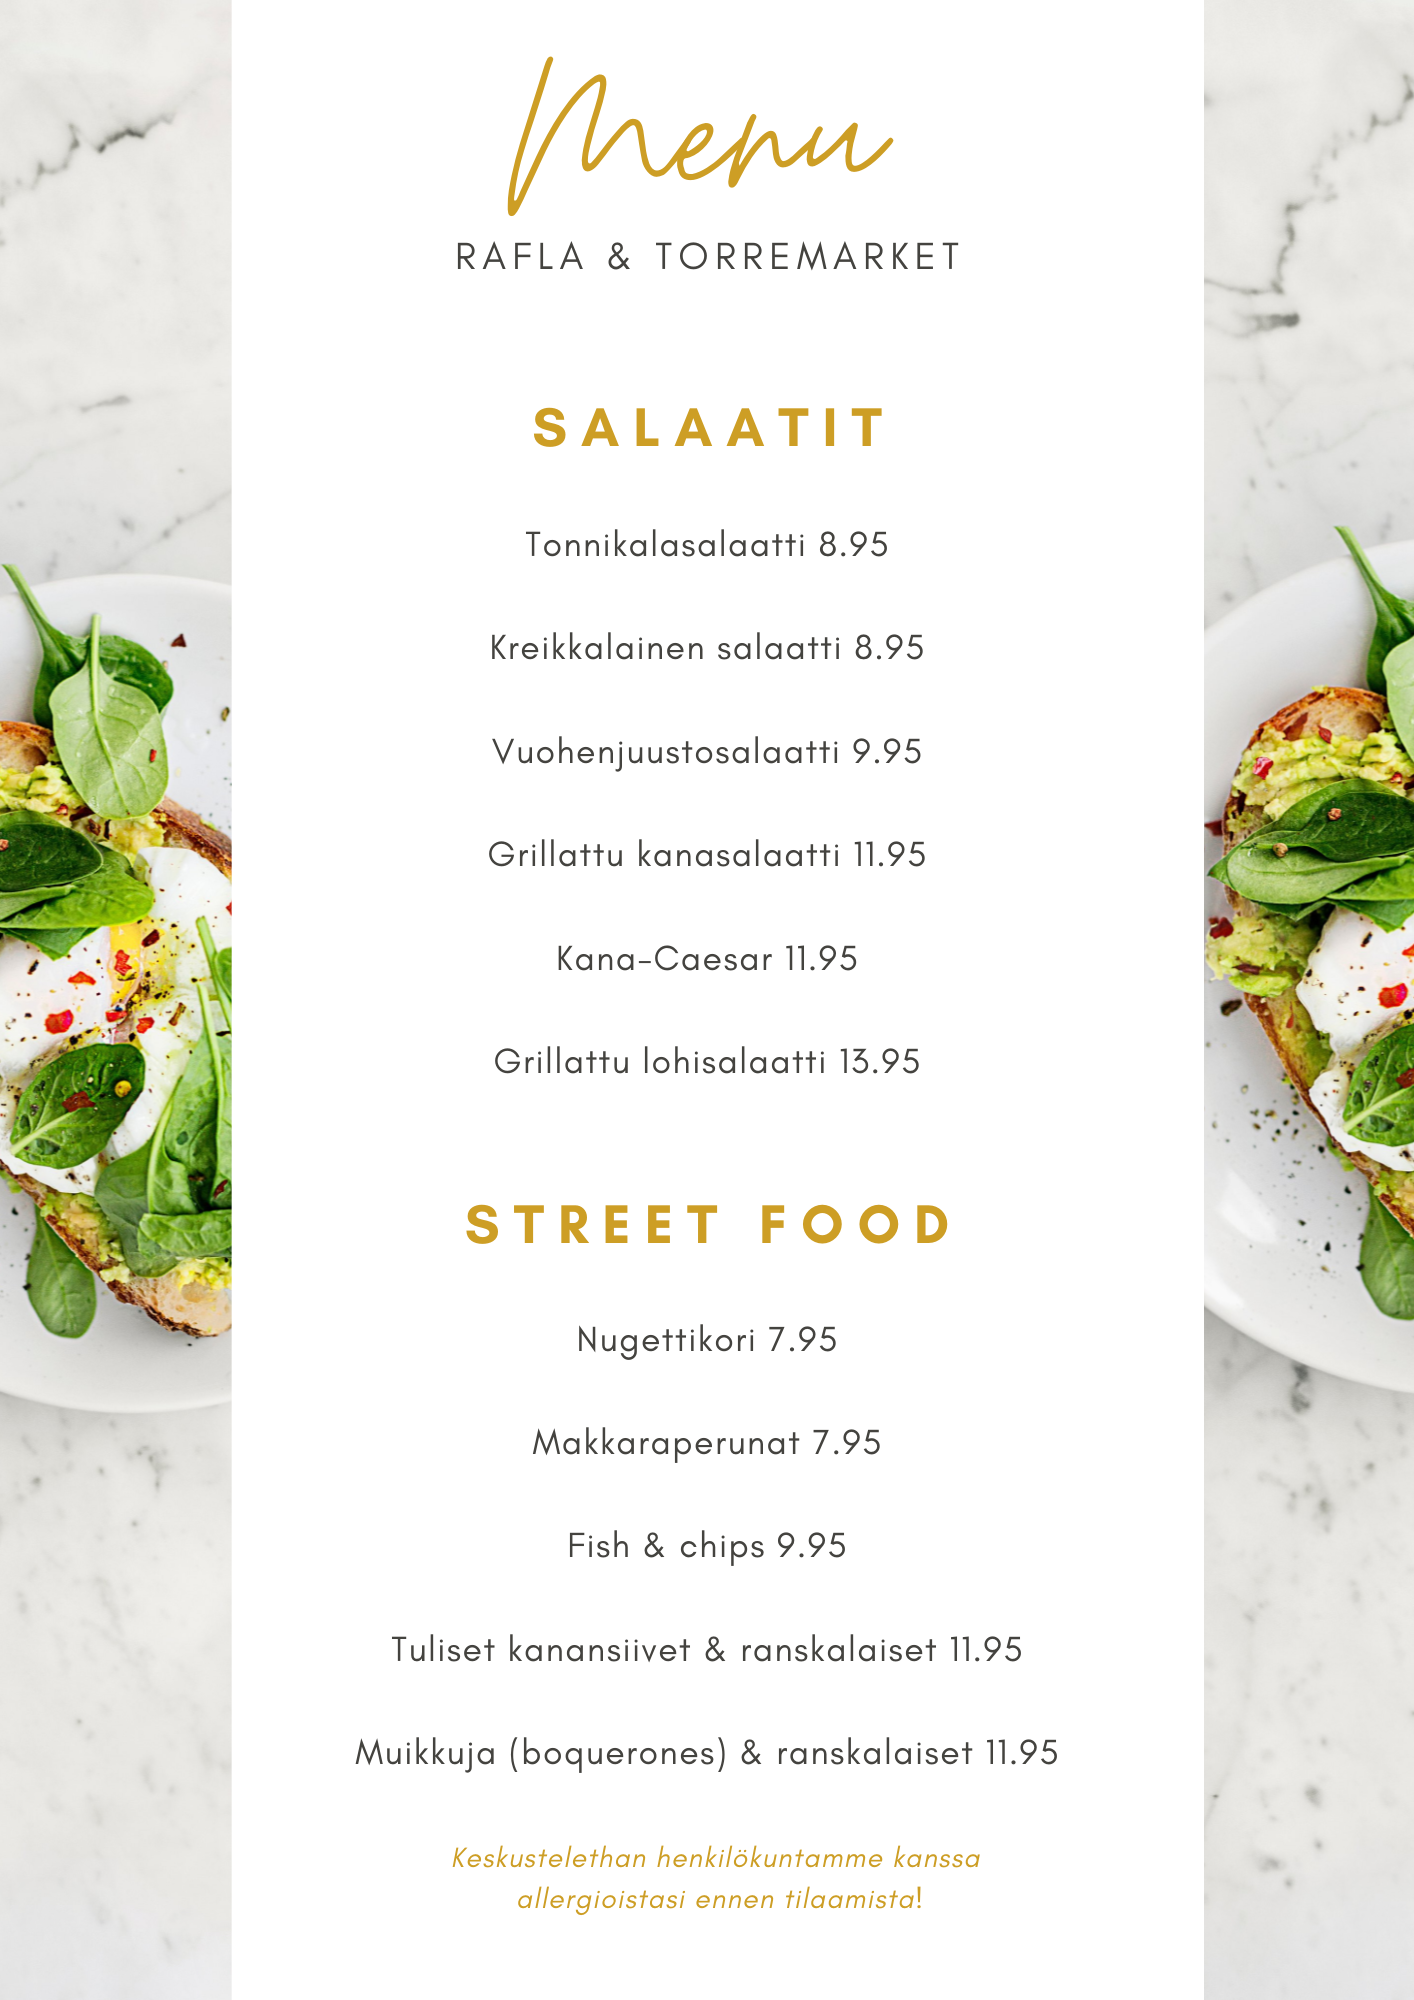 Salaatit & Street Food